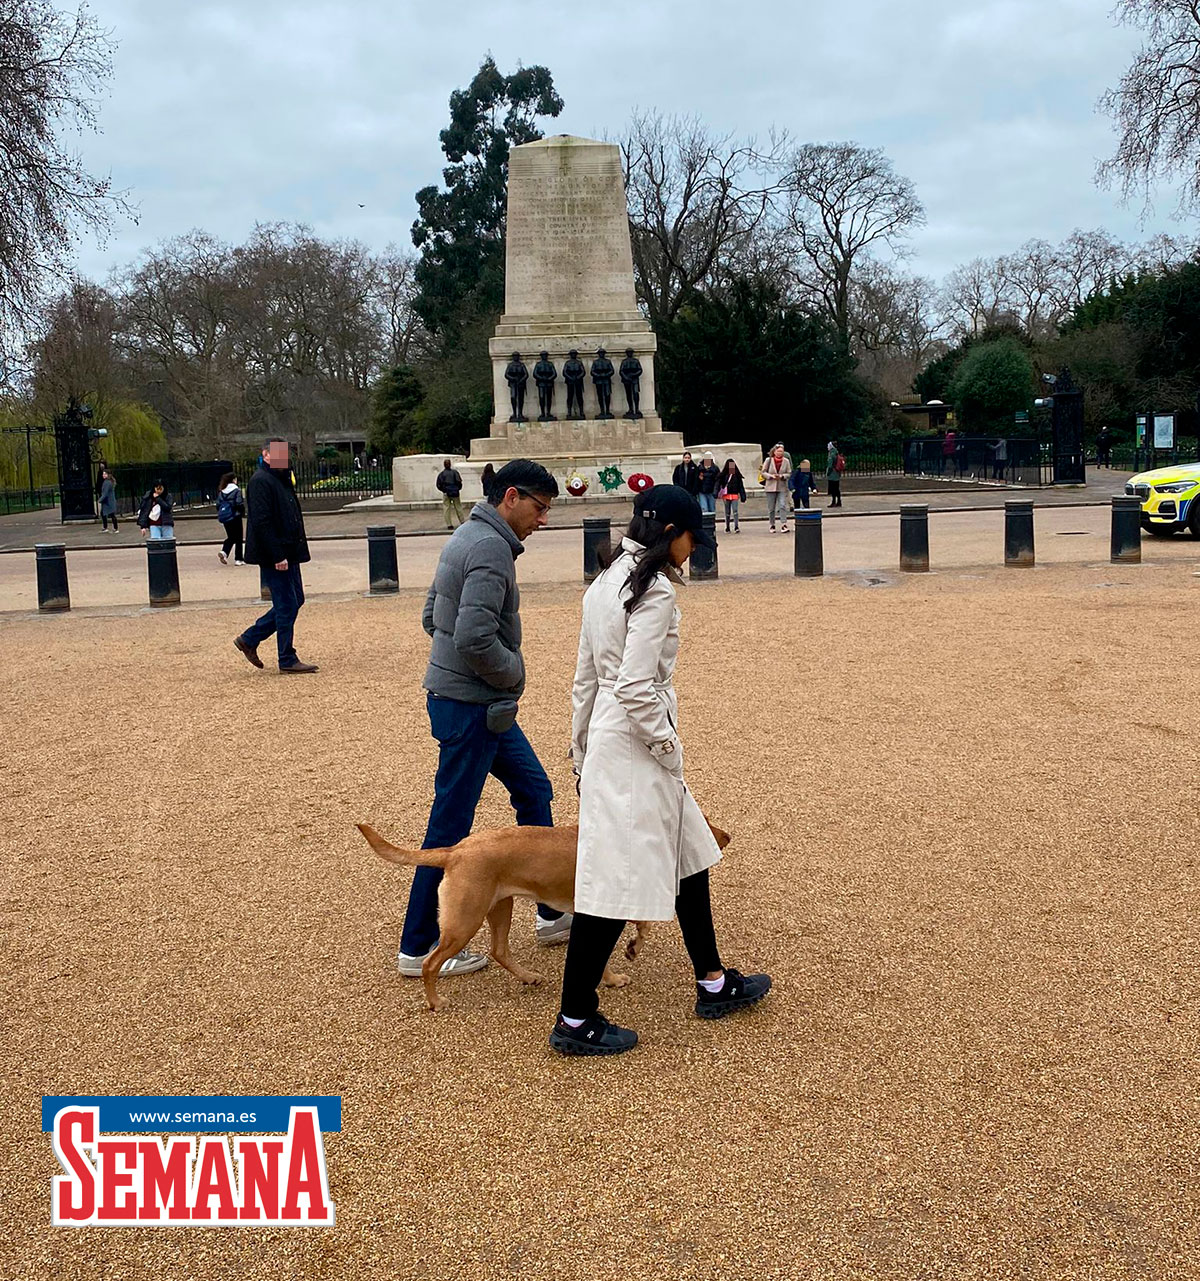 El discreto paseo del primer ministro británico, Rishi Sunak, con su mujer y su perro por Londres